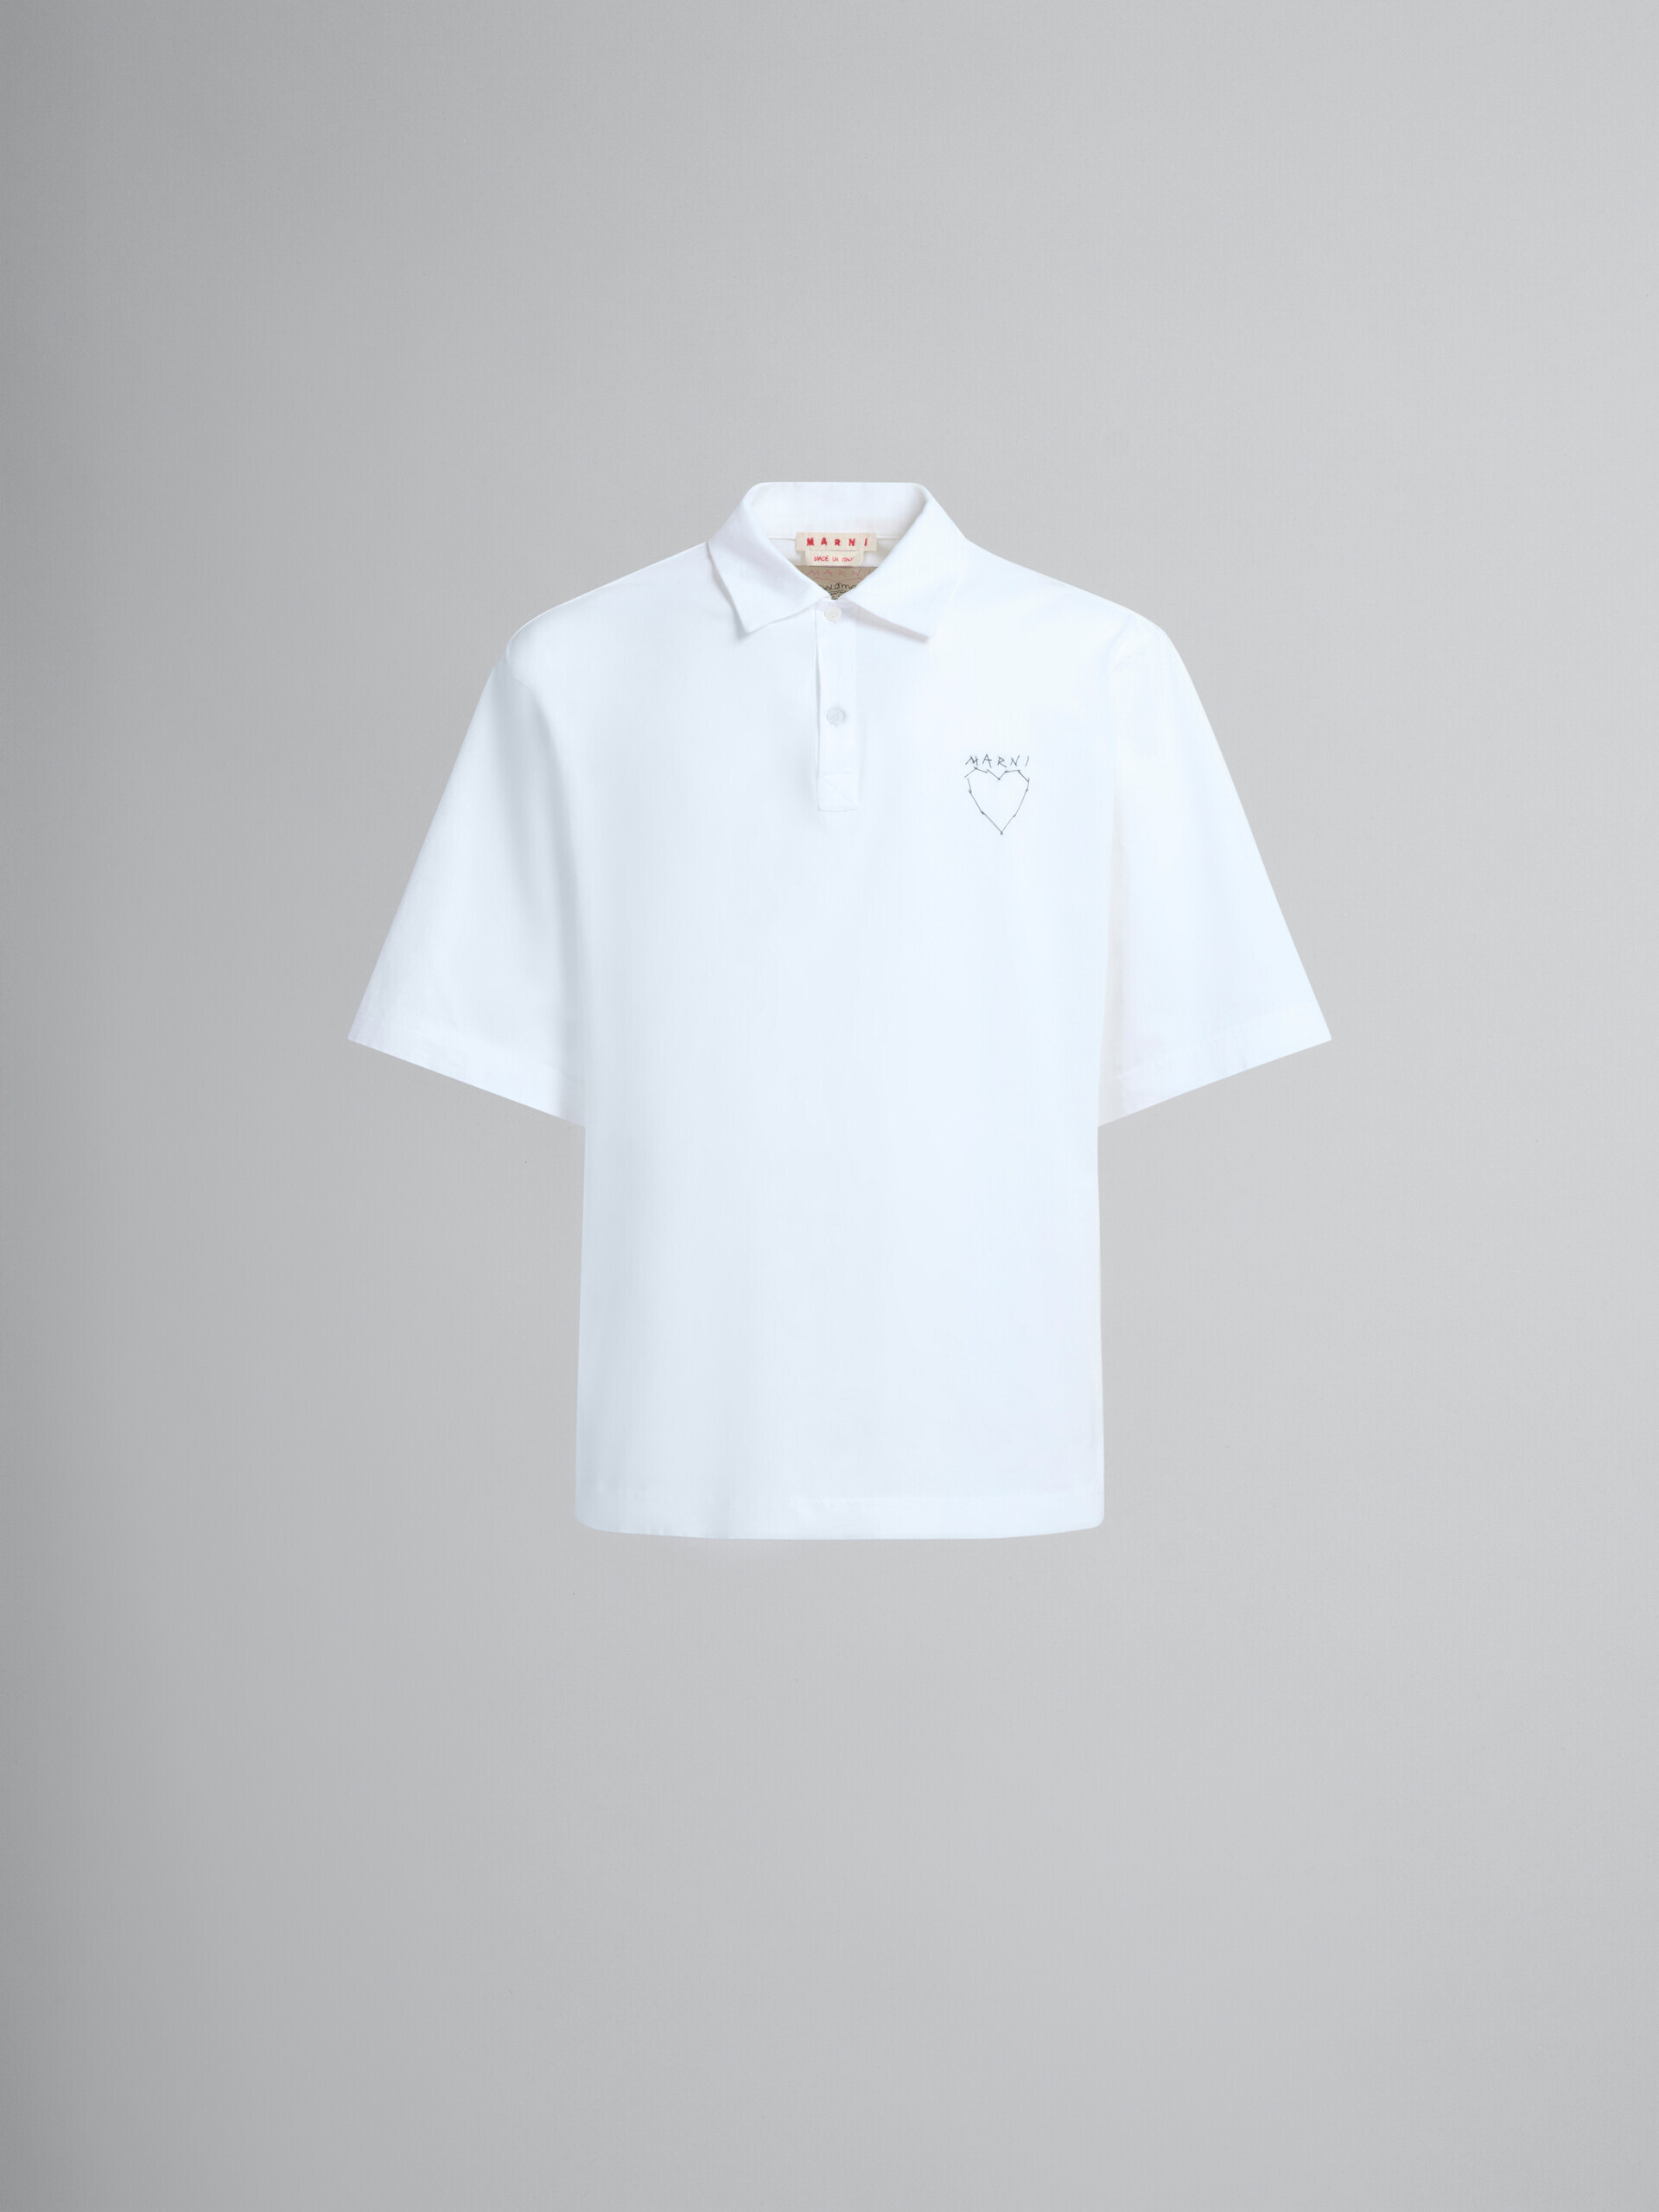 Weißes Poloshirt aus Bio-Baumwolle mit Print auf der Rückseite - Hemden - Image 2